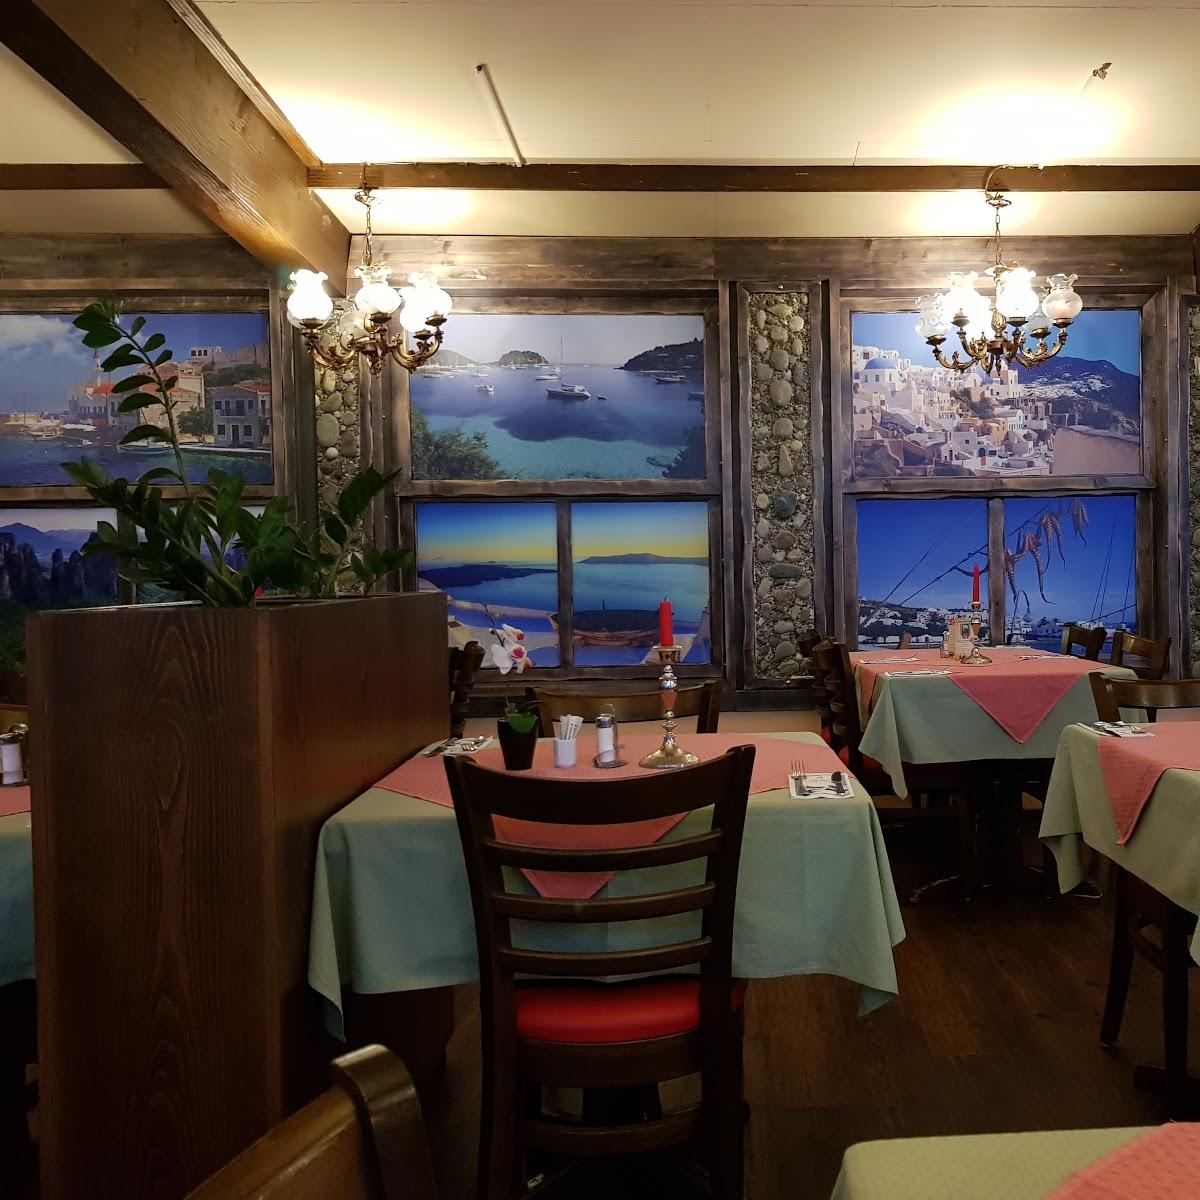 Restaurant "Poseidon Zollerblick" in  Hechingen